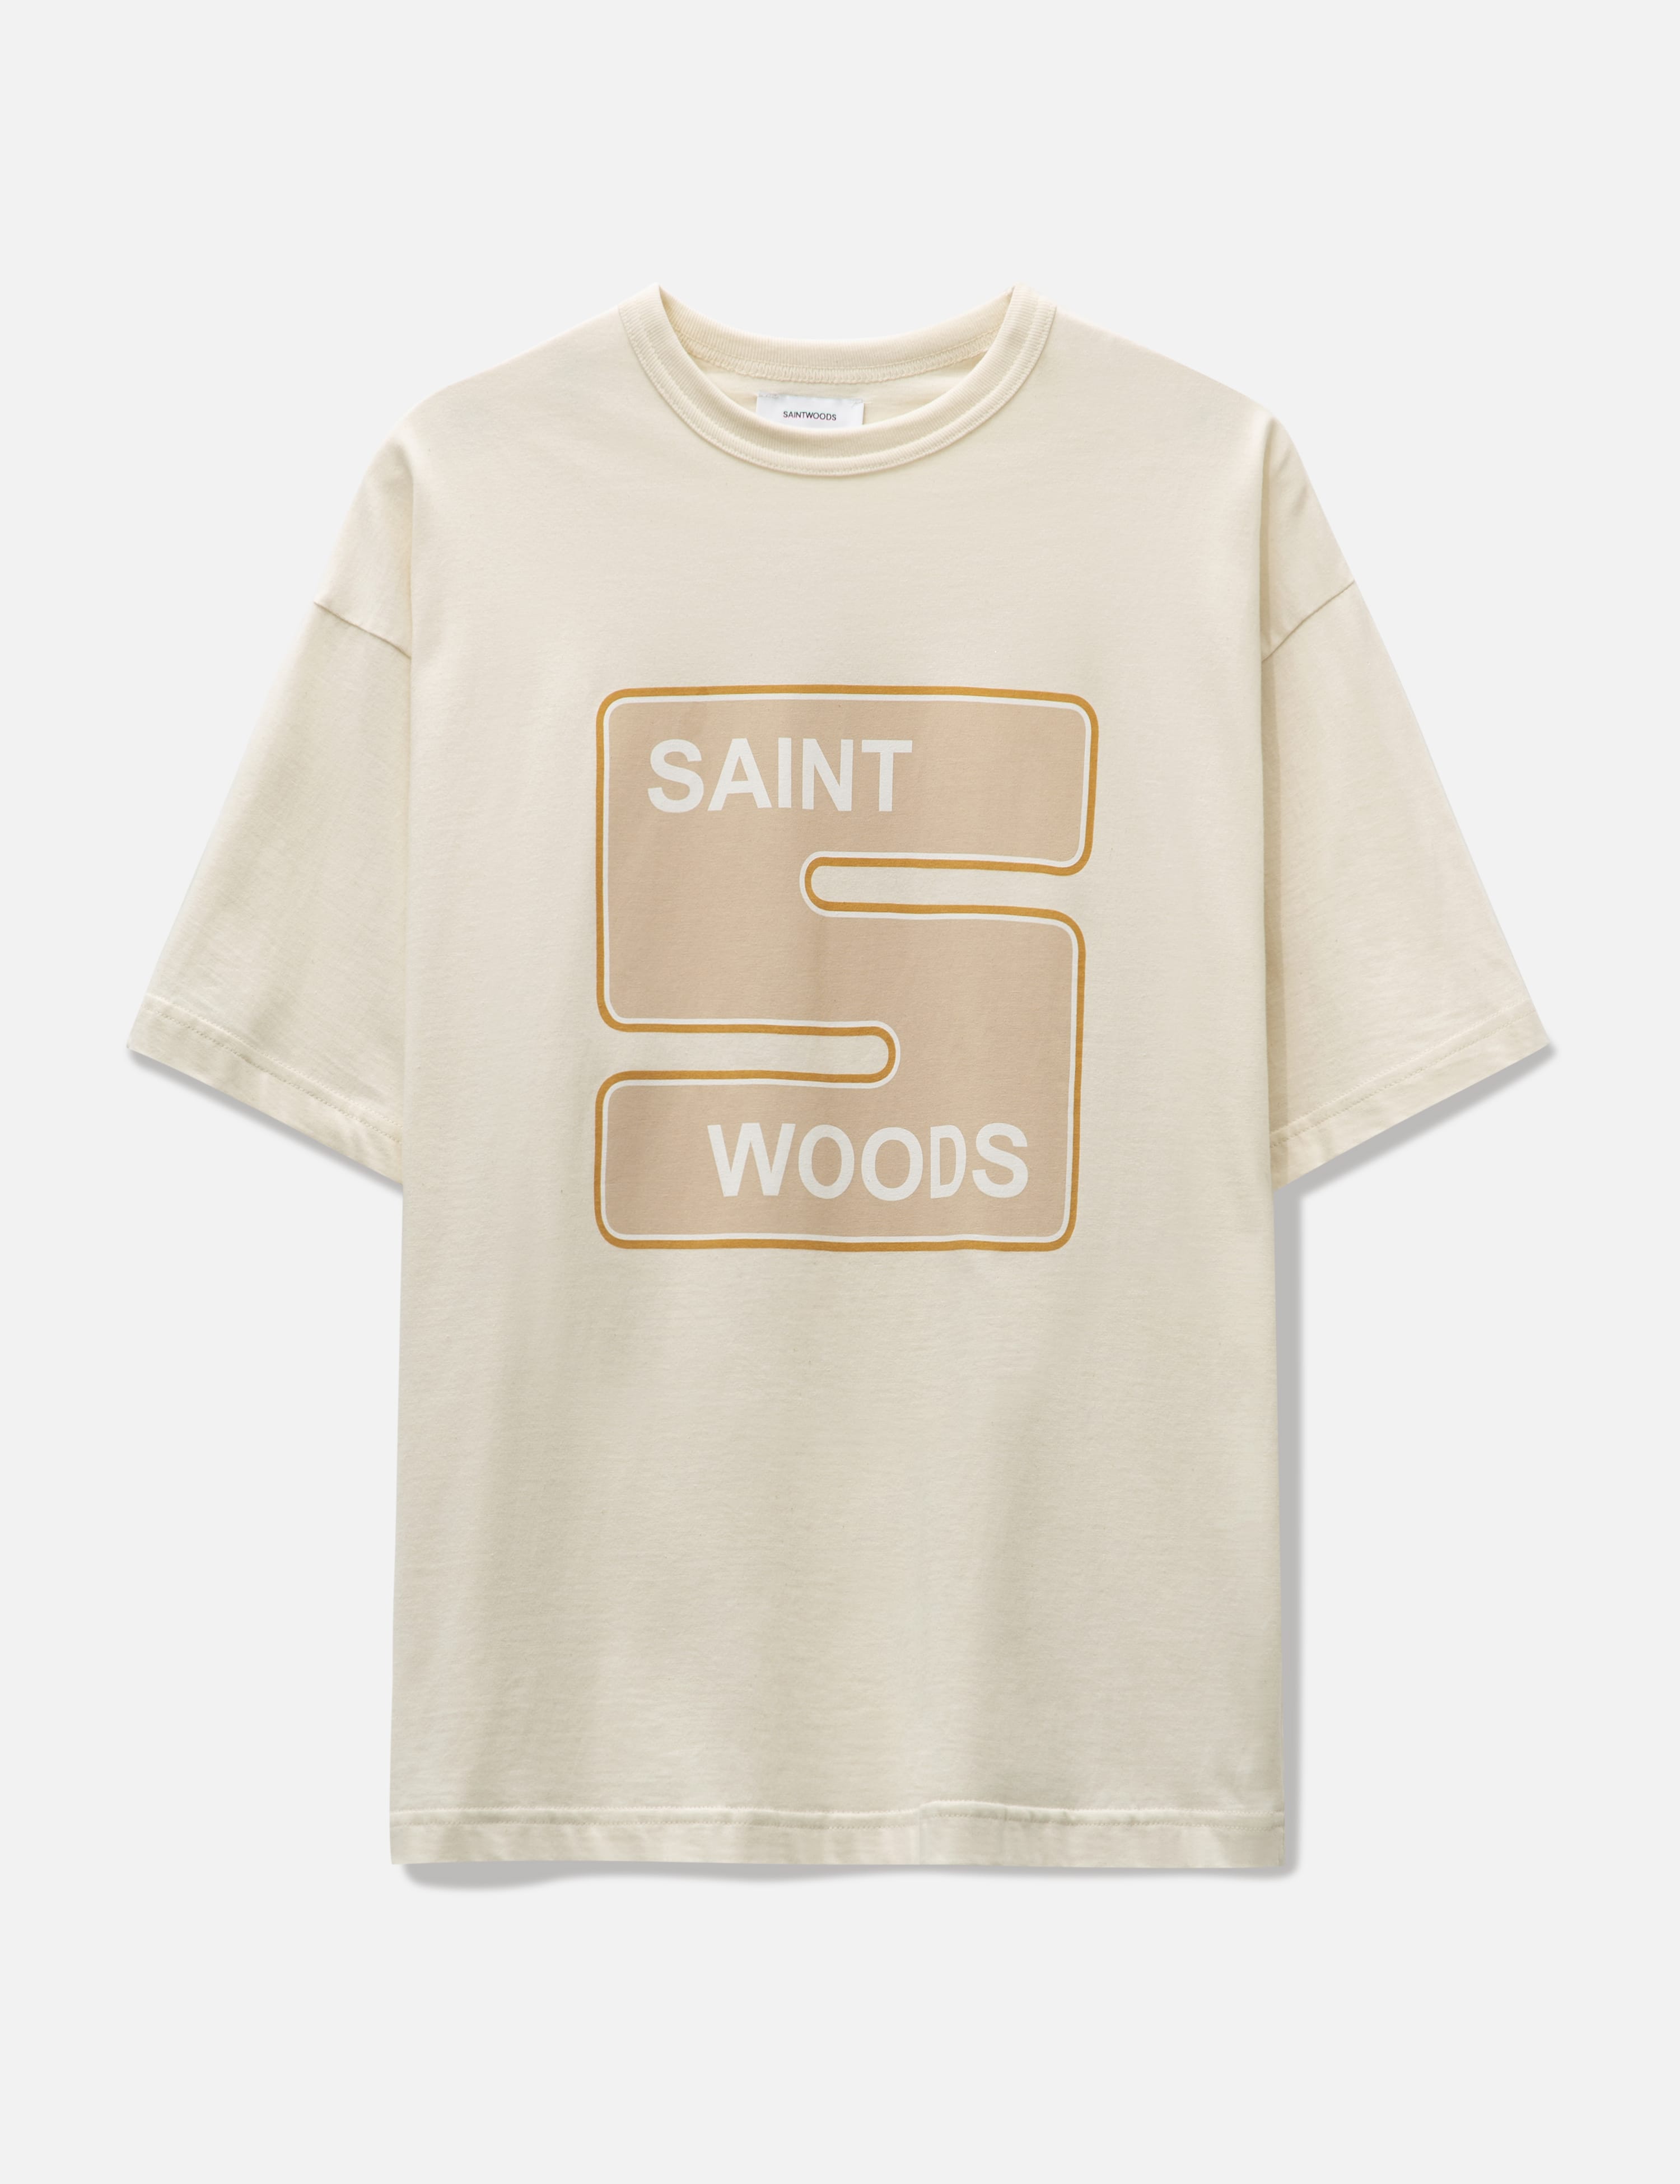 Saintwoods - SW ネイバー Tシャツ | HBX - ハイプビースト(Hypebeast ...